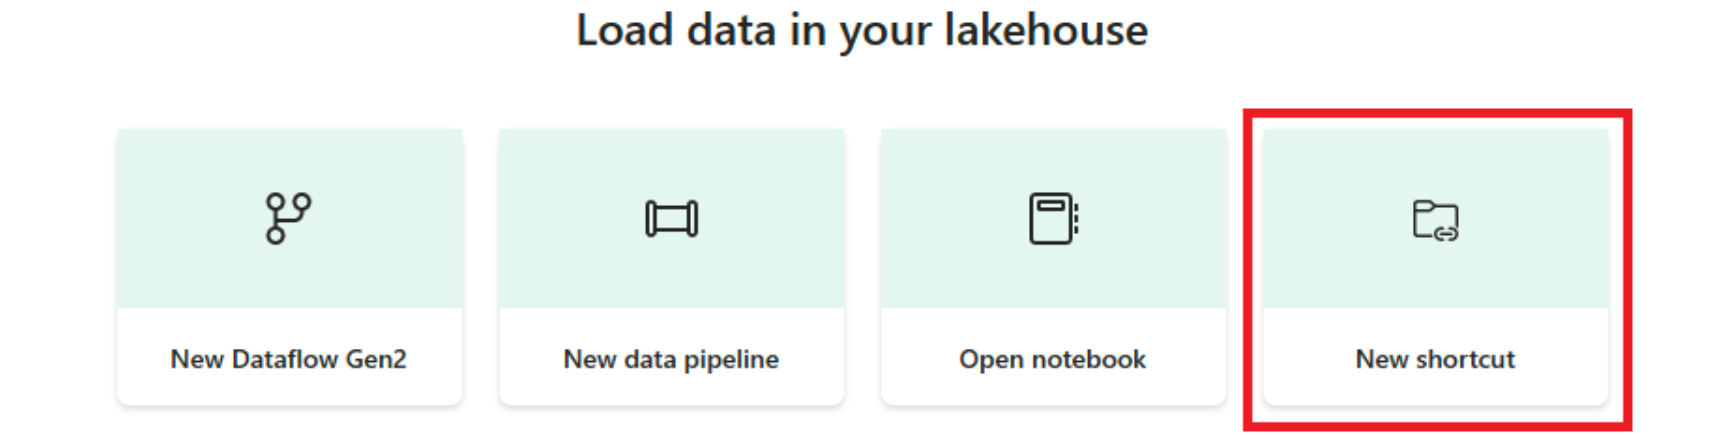 Zrzut ekranu z portalu sieci szkieletowej przedstawiający menu Ładowanie danych w menu lakehouse na stronie docelowej. Przycisk Nowy skrót jest w kolorze czerwonym.